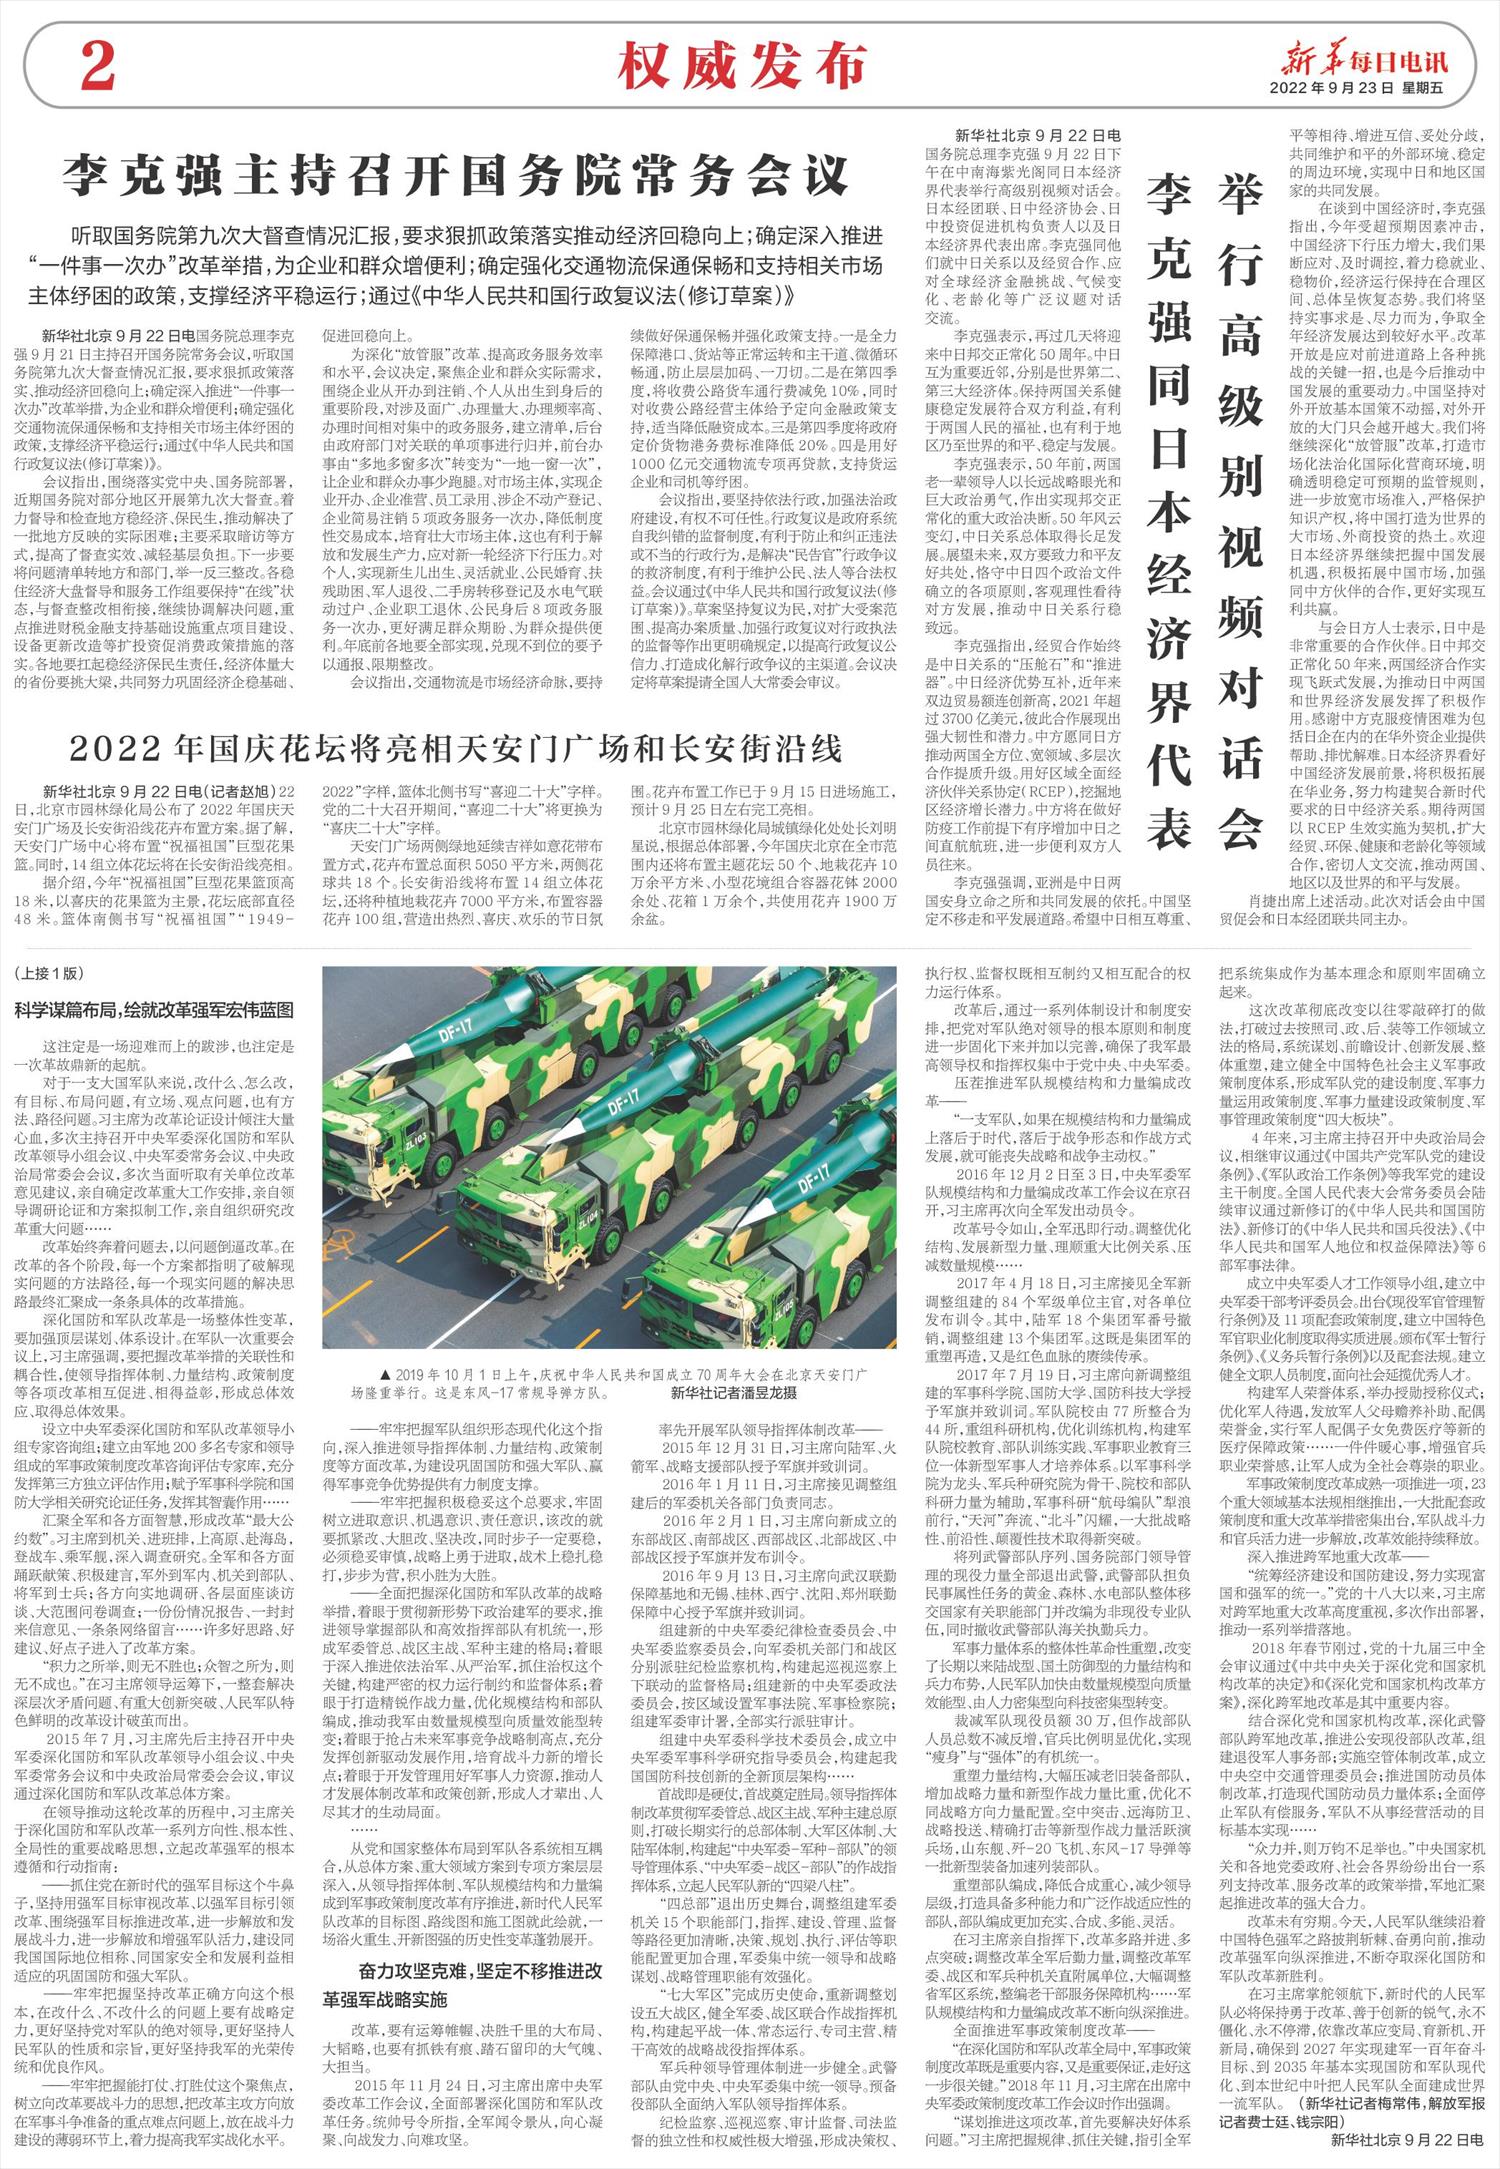 新华每日电讯-微报纸-2022年09月23日